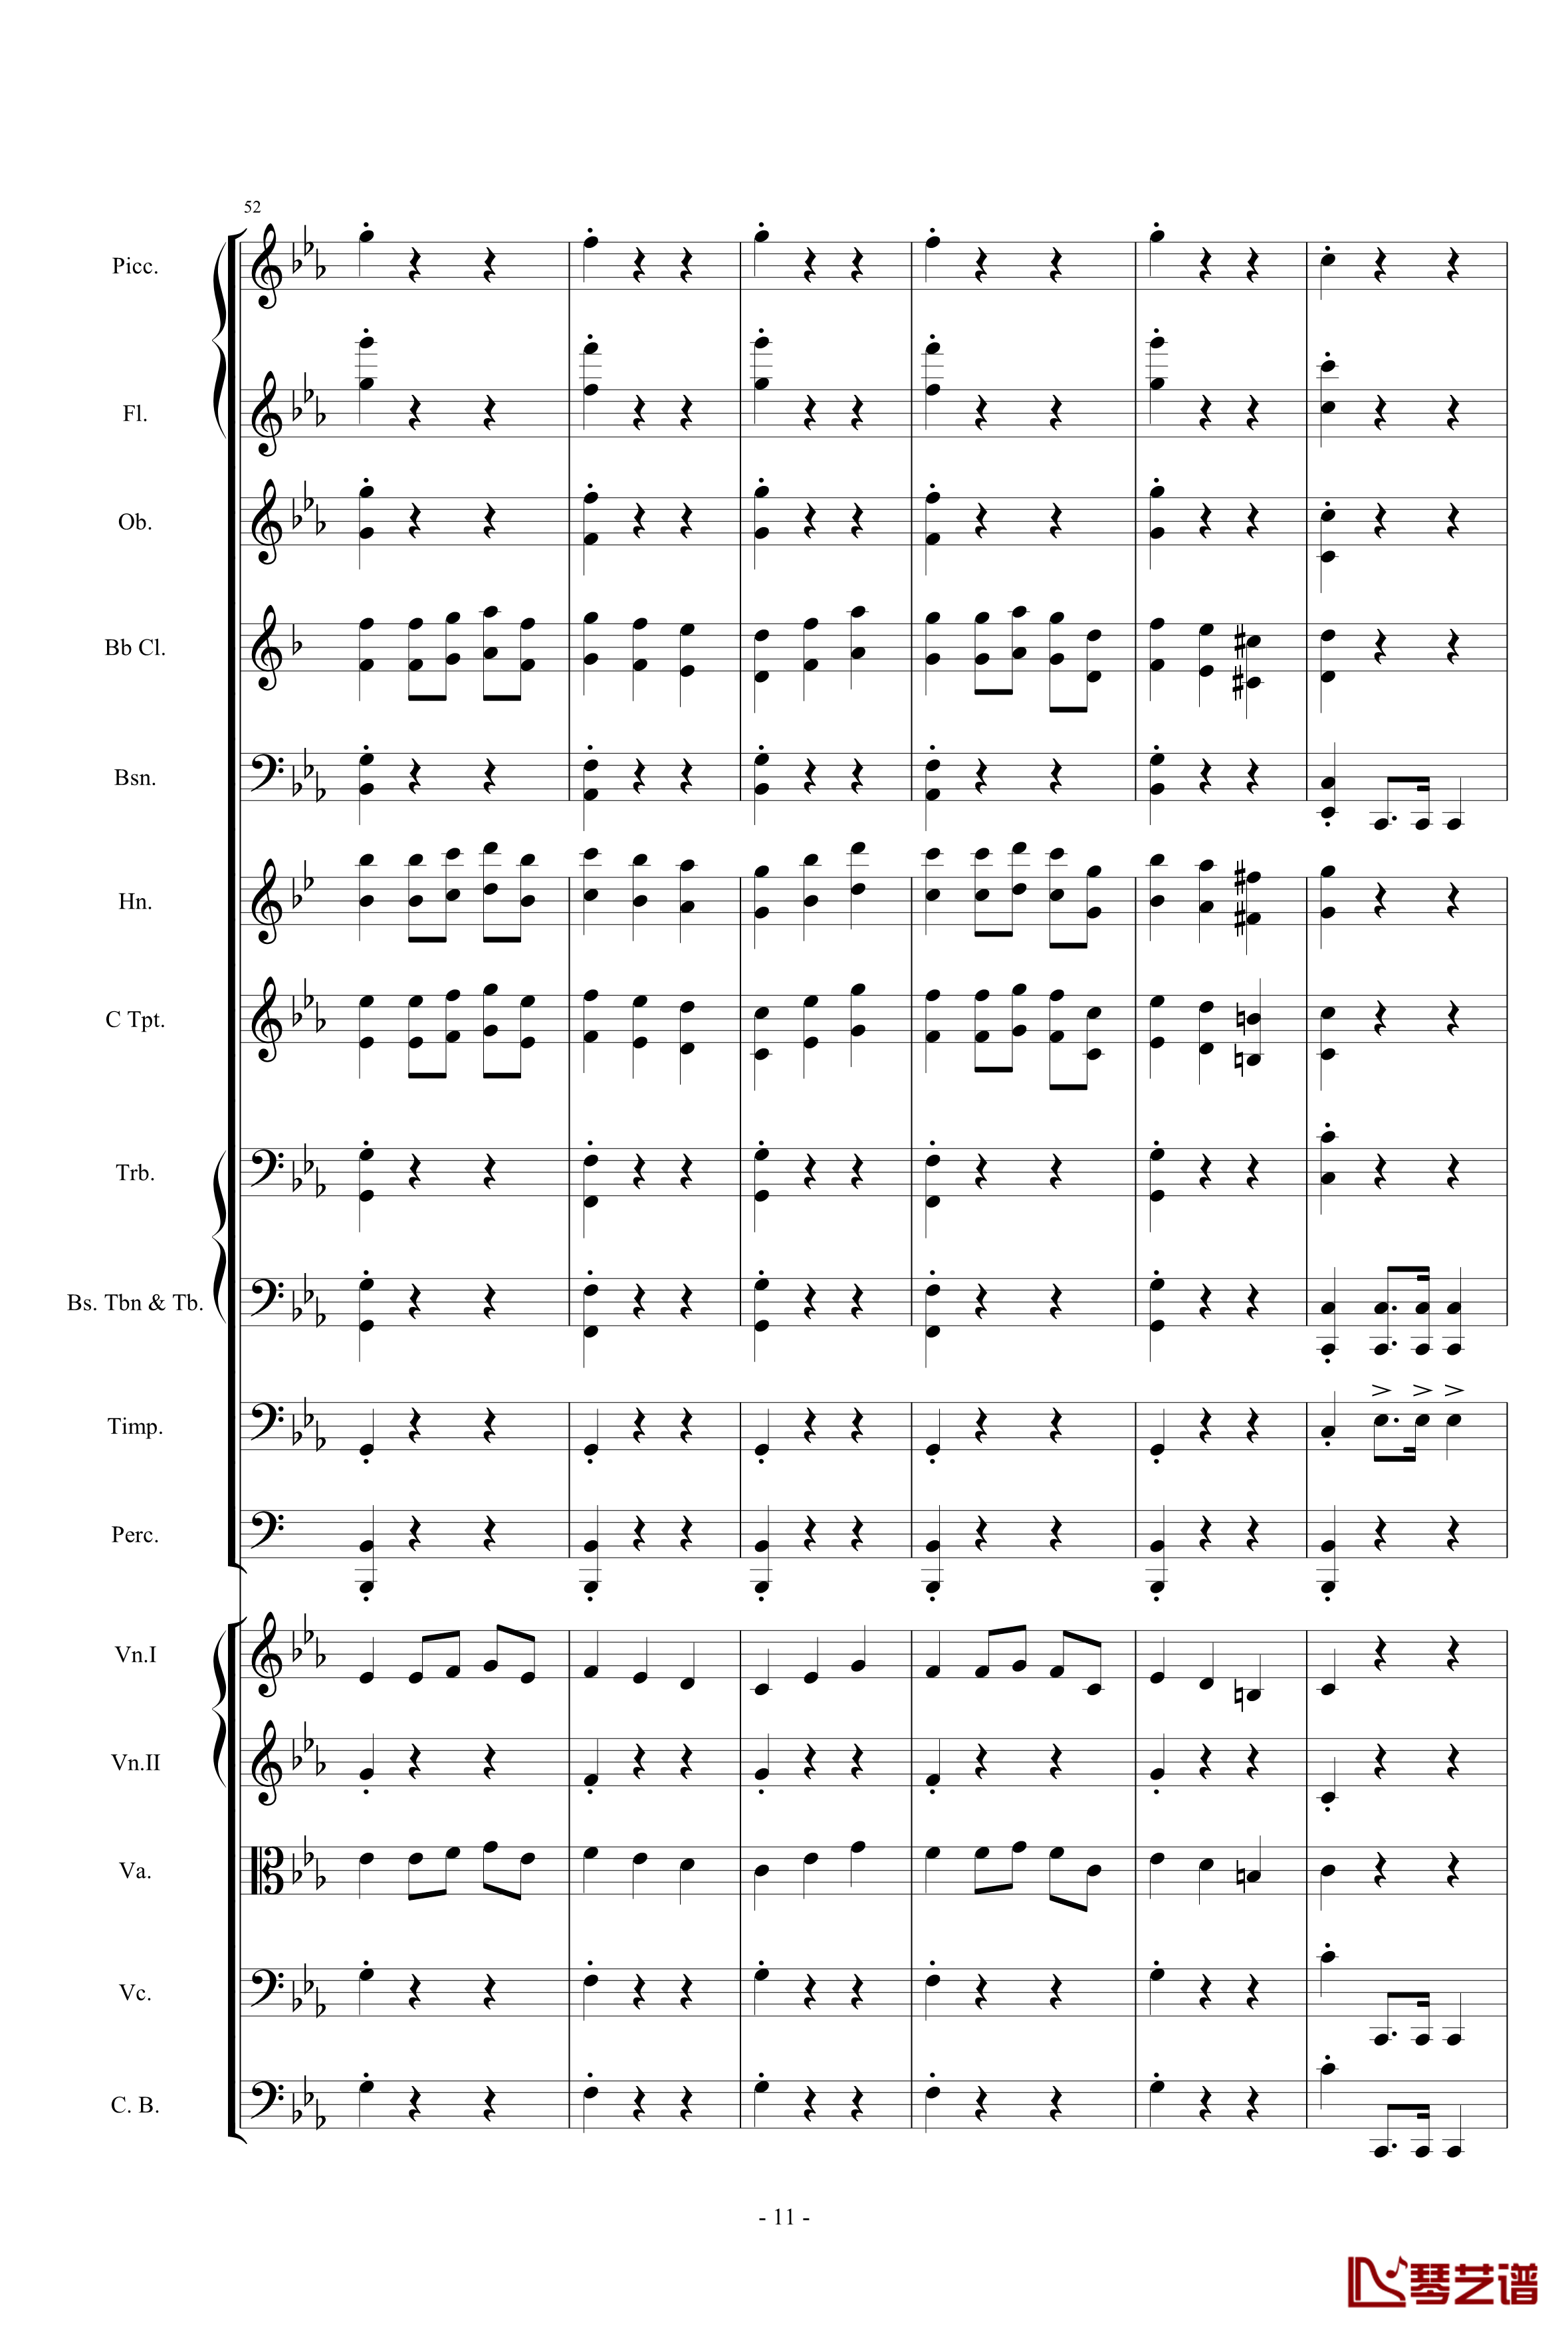 愤怒的小鸟交响曲第三乐章Op.5 no.3钢琴谱-1057257811